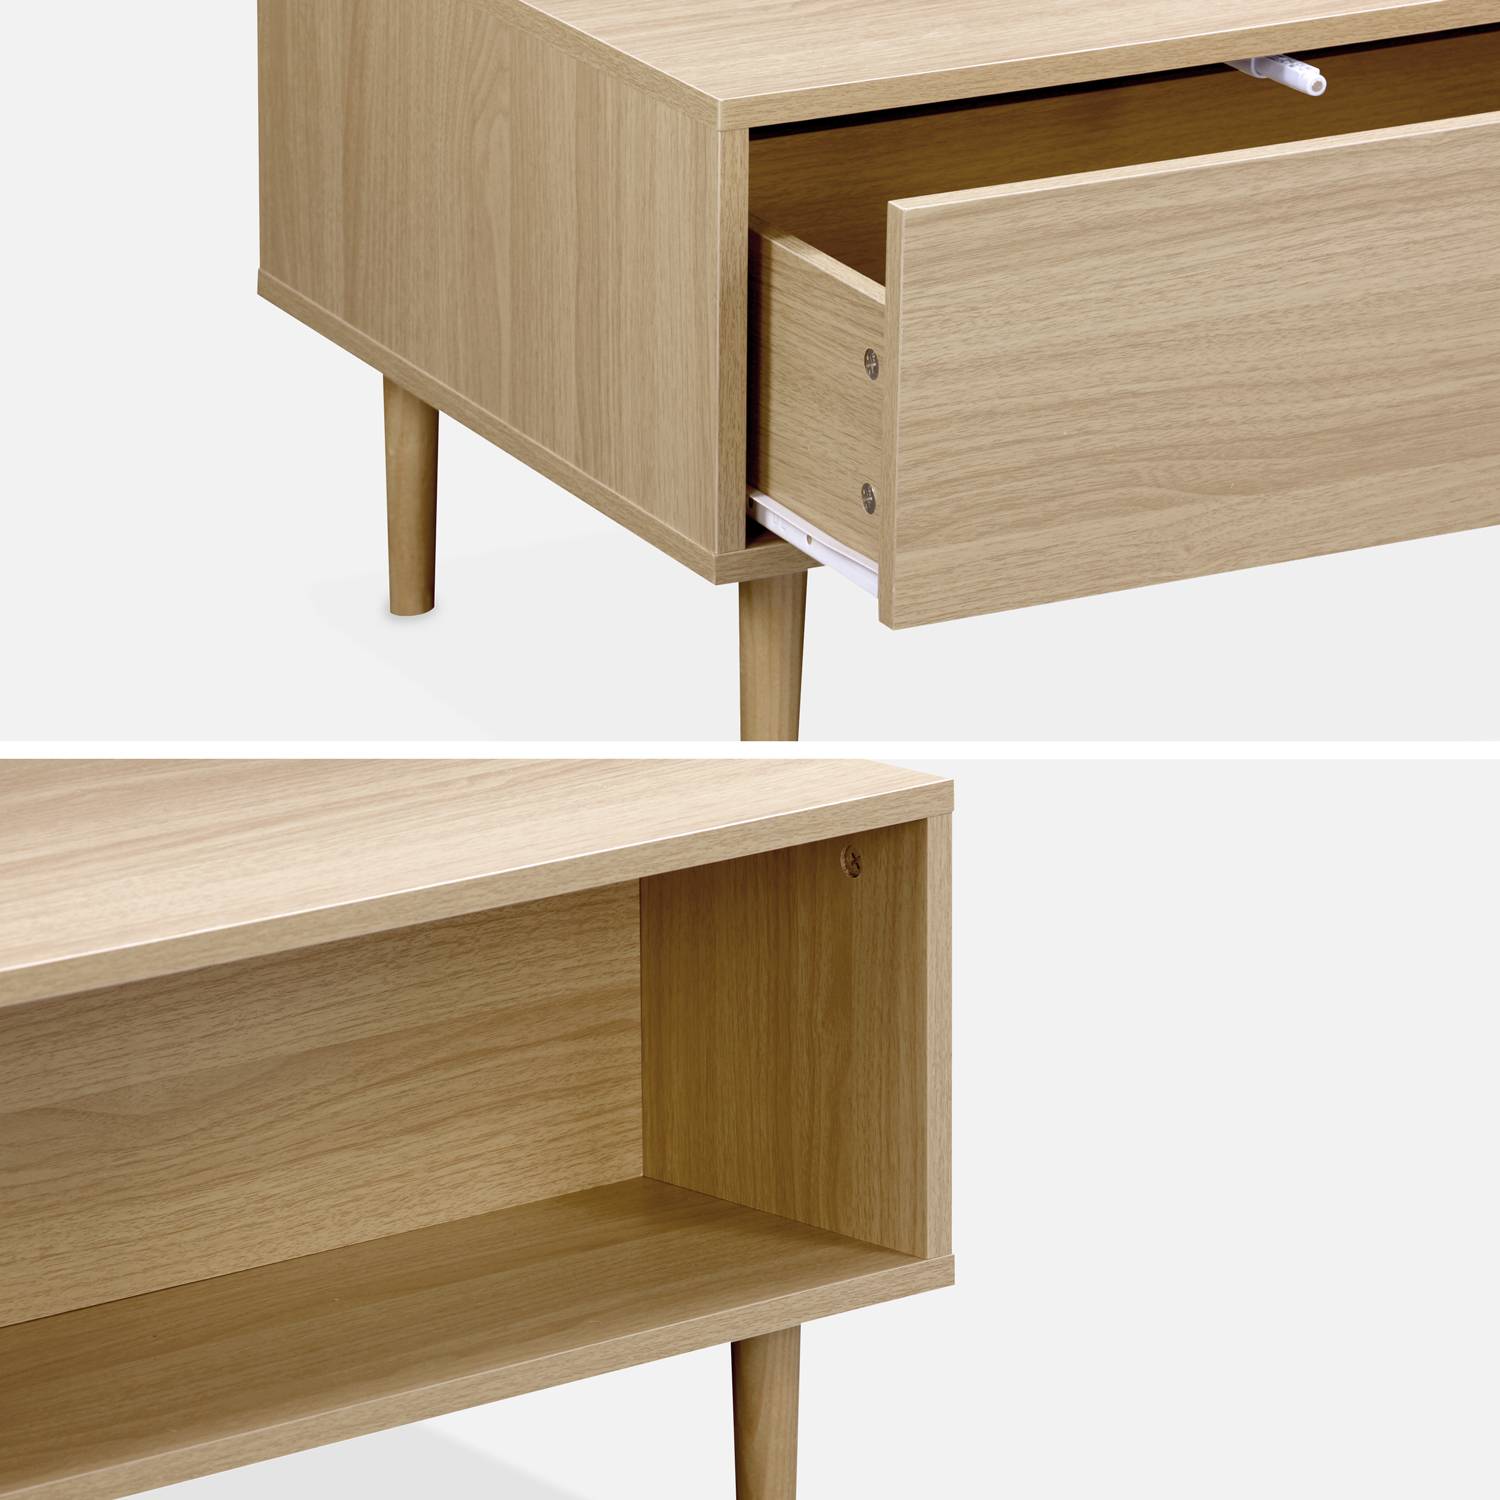 Tavolino in legno decorato - Mika - 2 cassetti, 2 vani portaoggetti, L 120 x L 55 x H 40cm Photo6